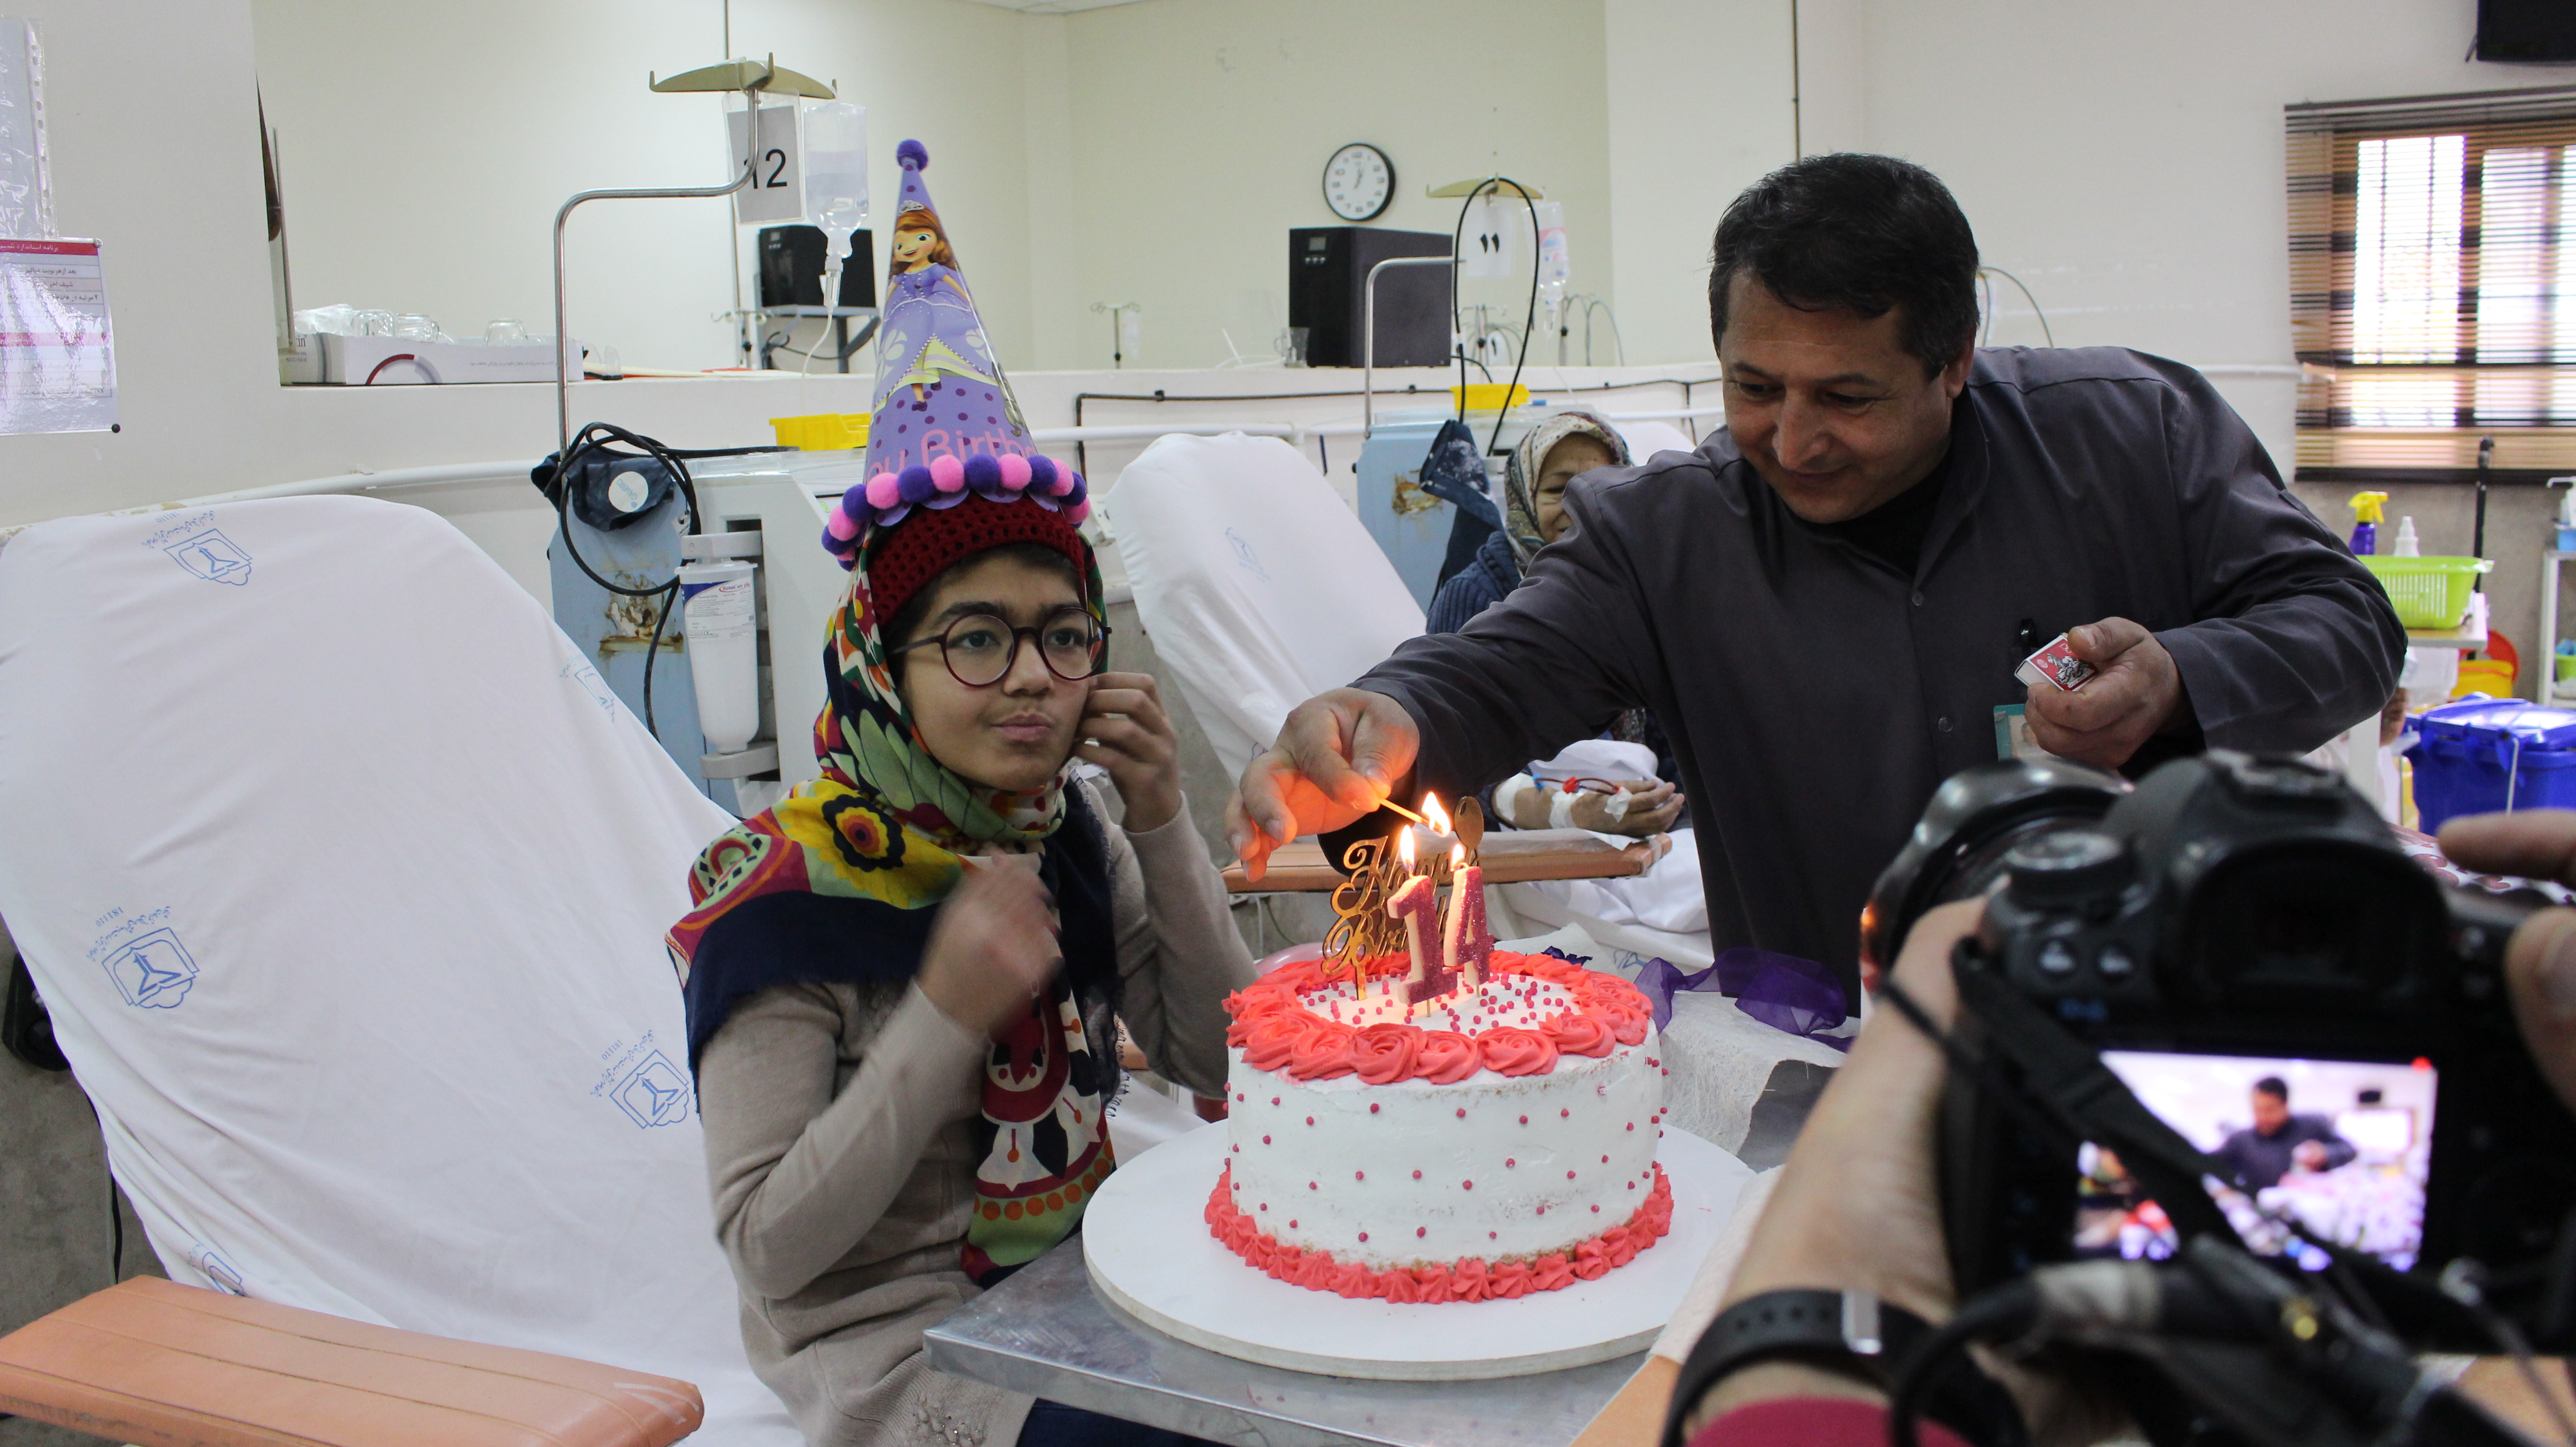 برگزاری جشن تولد برای کودک دیالیزی